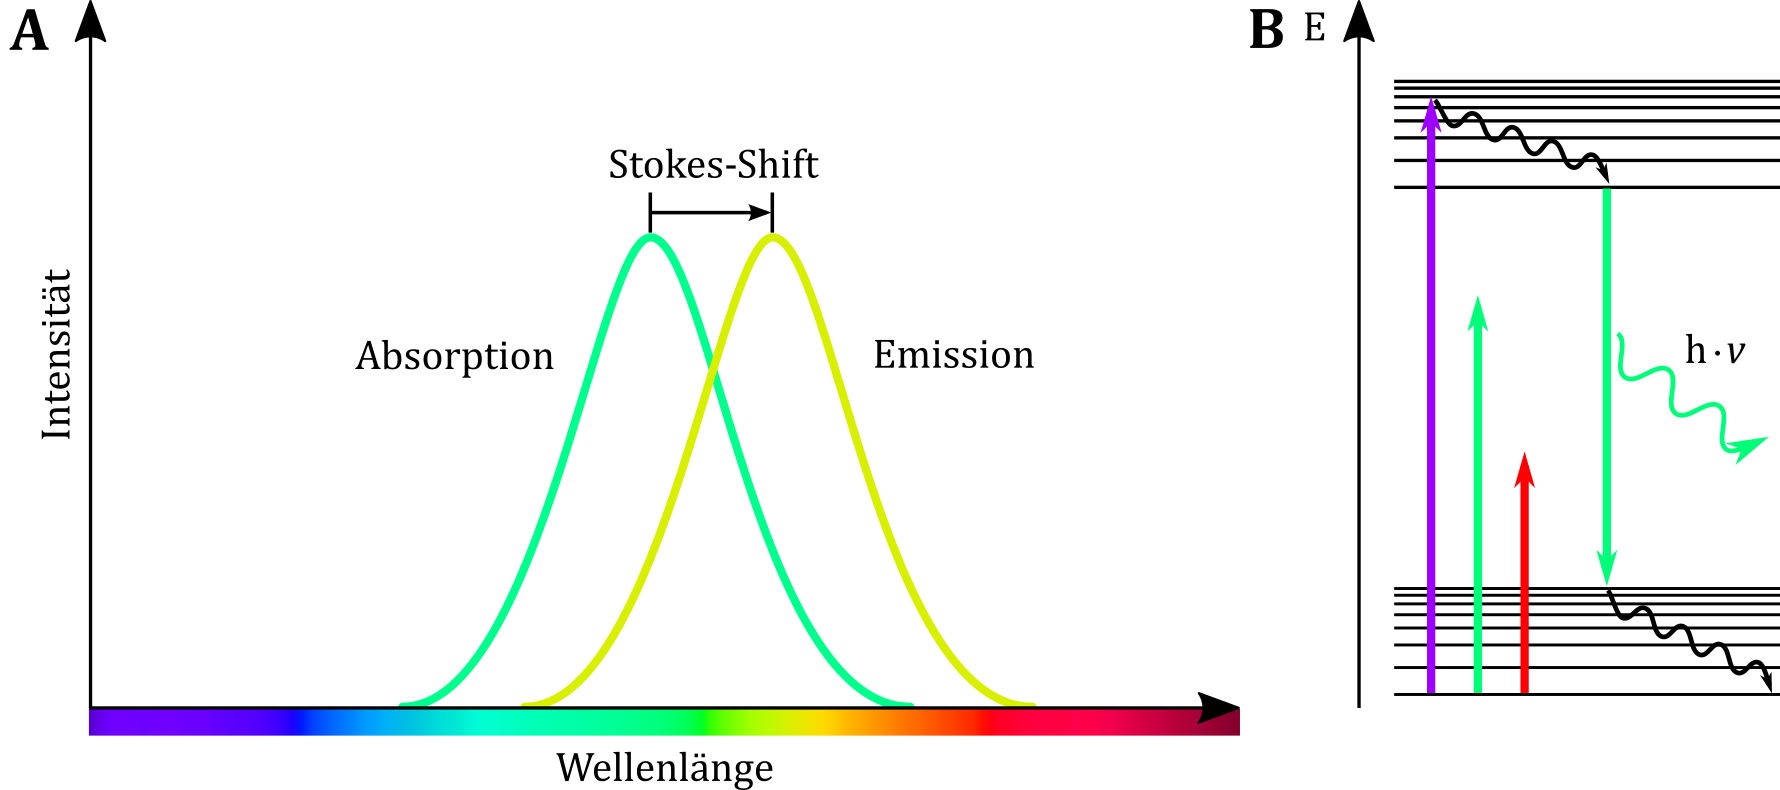 (A) Das Emissionsspektrum ist im Vergleich zum Absorptionsspektrum deutlich rotverschoben. (B) Aufgrund des Stokes-Shift reichen die Energien grüner bzw. roter Wellenlängenbereiche nicht aus, um eine grün fluoreszierende Substanz zur Fluoreszenz anzuregen.